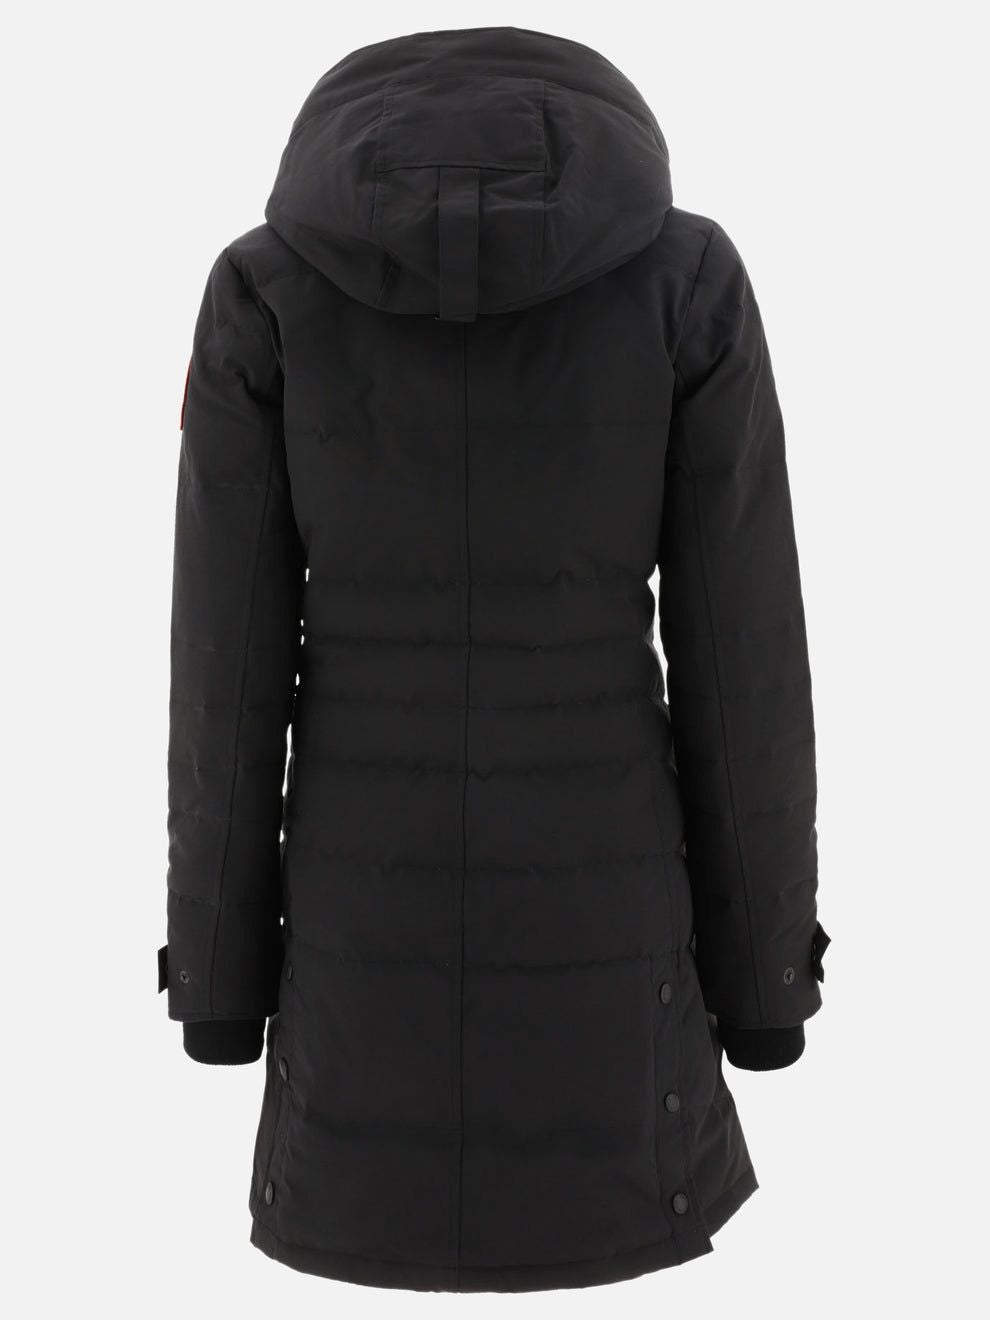 女性用ブラックロレッテパーカージャケット - この万能冬用ジャケットで暖かくおしゃれに